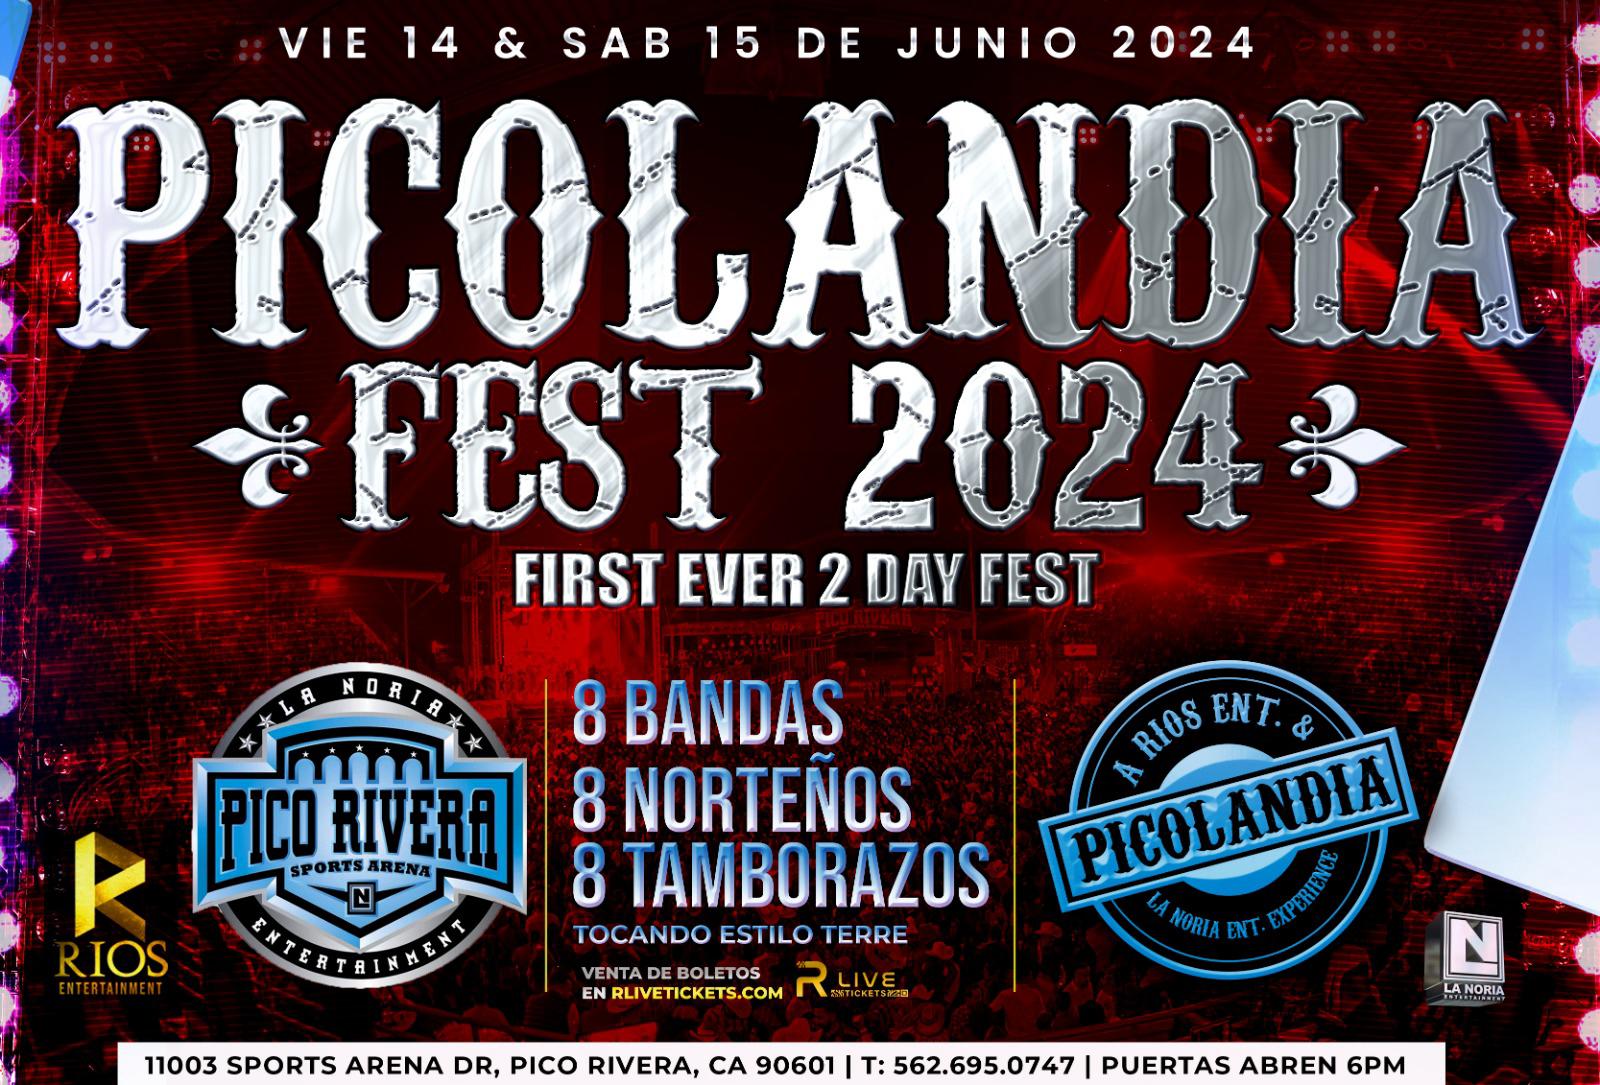 PICOLANDIA FEST flyer